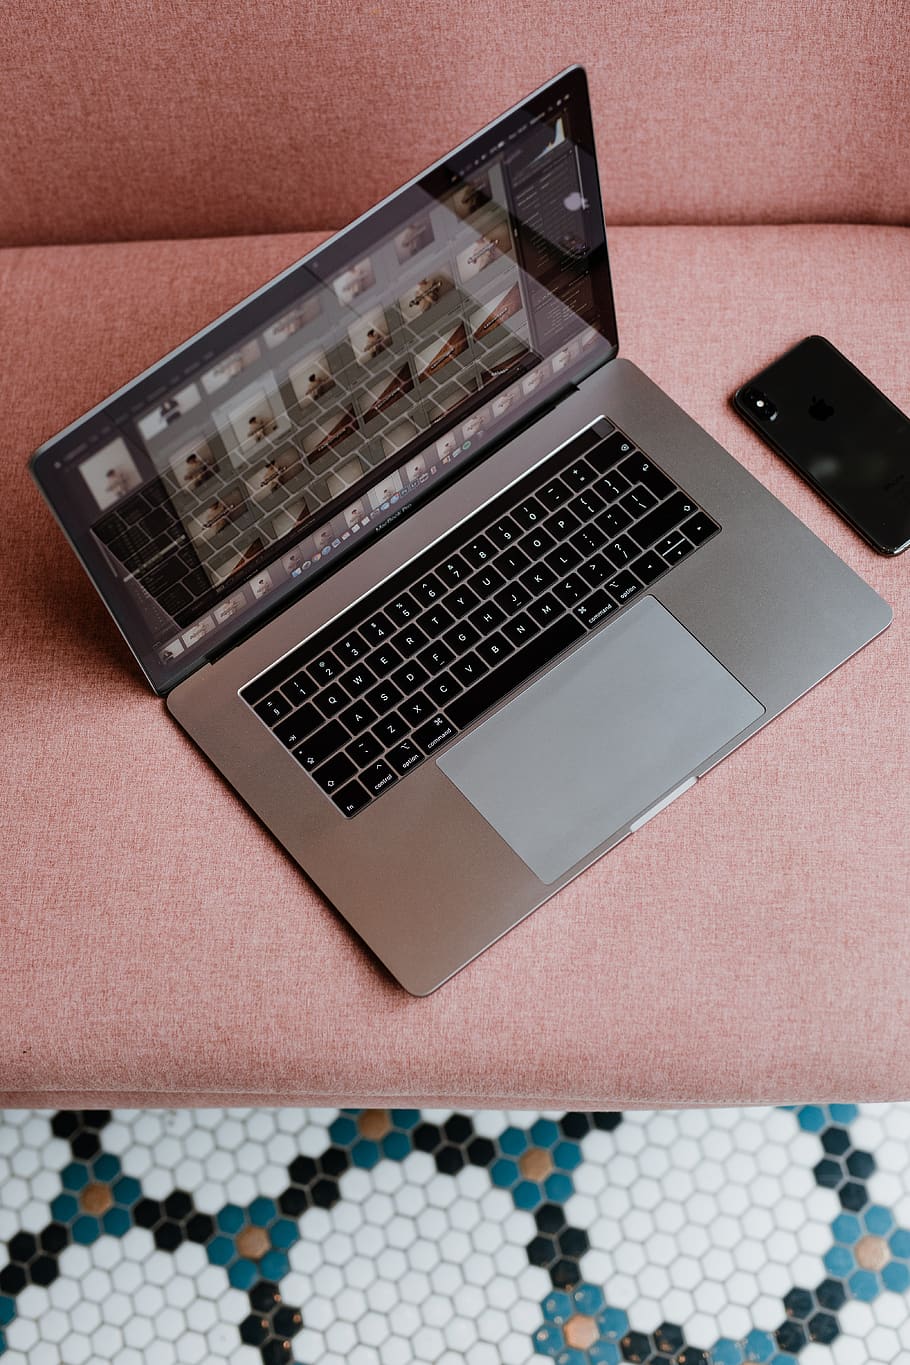 laptop, pink sofa, mobile phone, phone, macbook pro, MacBook Pro 15, iphone x, mobile, tech, technology